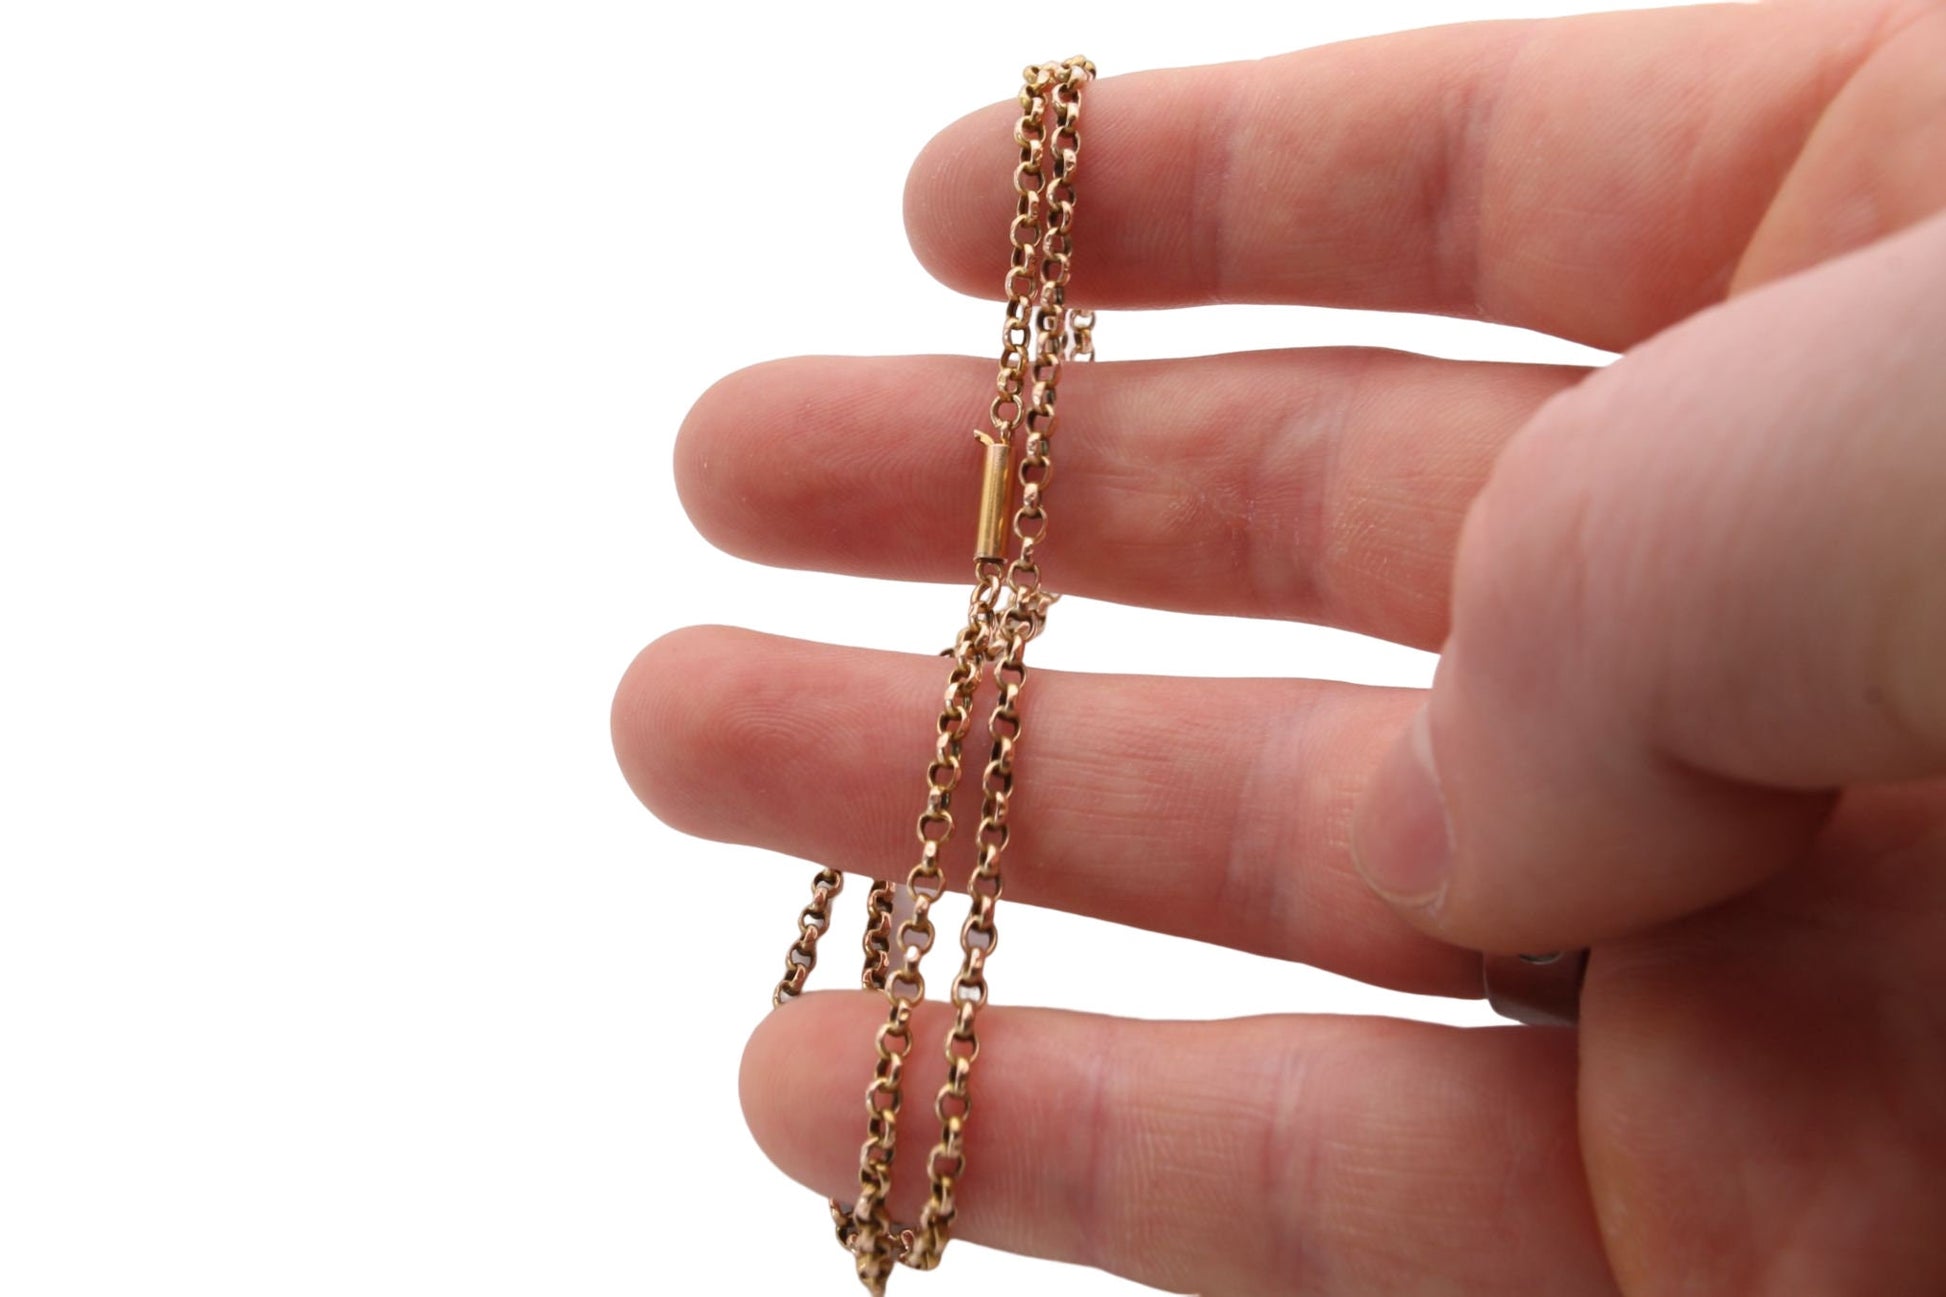 antique-15ct-gold-necklace-belcher-chain-barrel-clasp